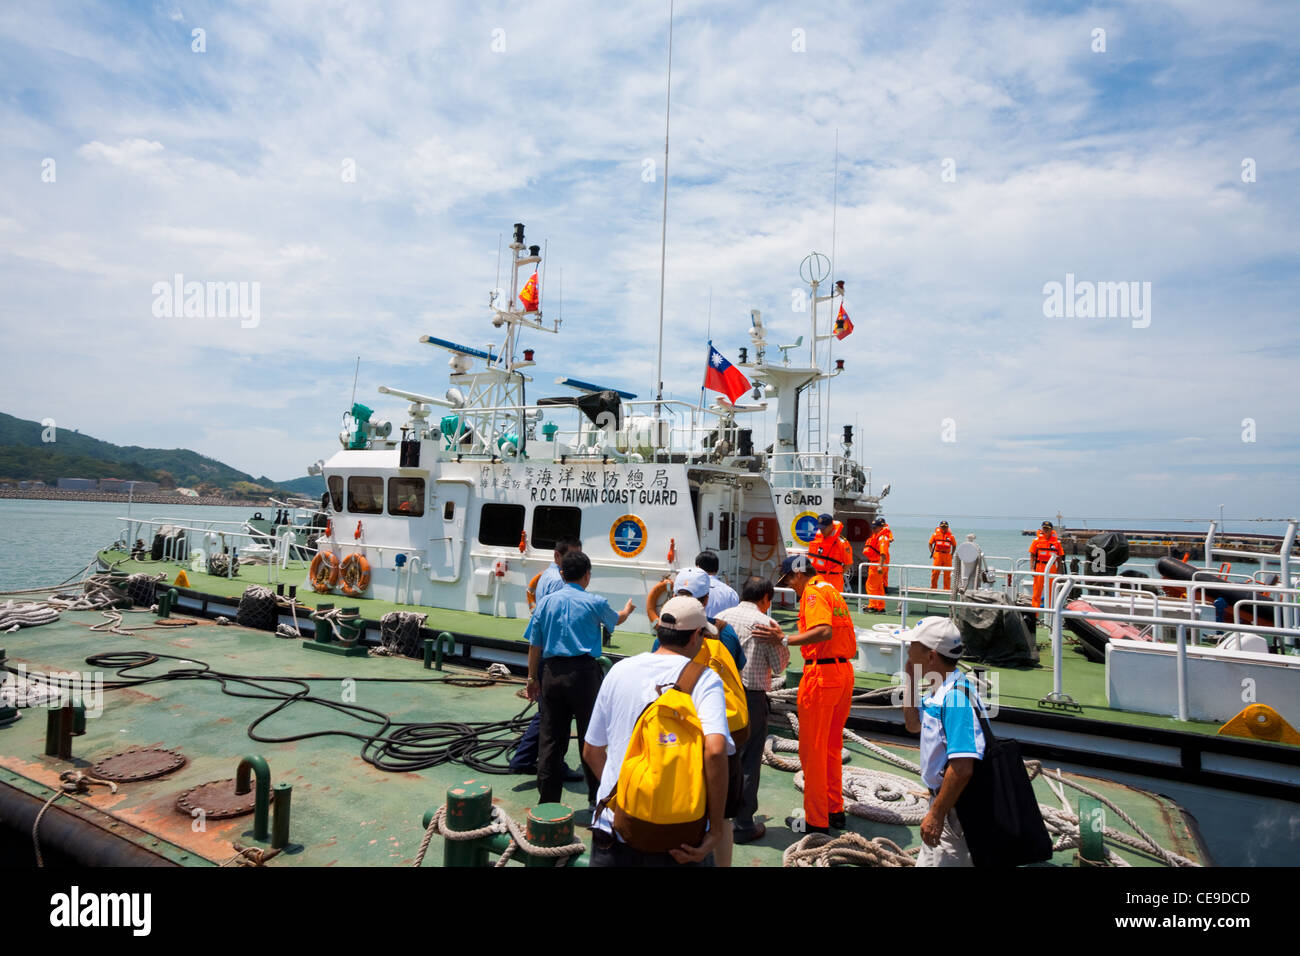 Taiwanesische Kosten Wache Mitglieder willkommen an Bord einer Gruppe von taiwanesischen Würdenträger auf einem Kutter Boot 15 August Matzu Island, Taiwa Stockfoto